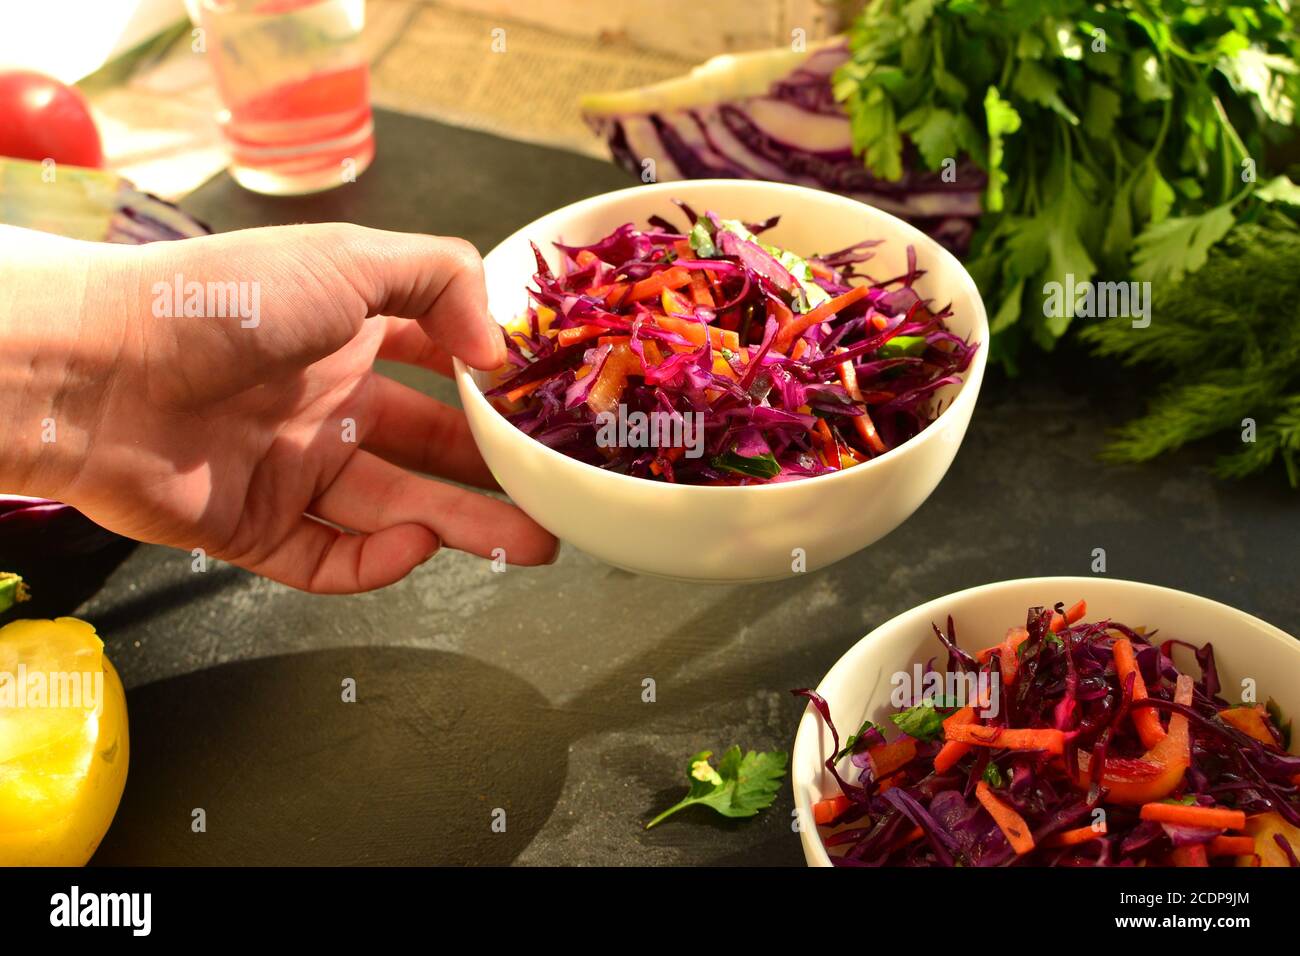 Rotkohlsalat mit Paprika und Karotten. Dunkler Hintergrund. Gesunde helle Lebensmittel. Stockfoto